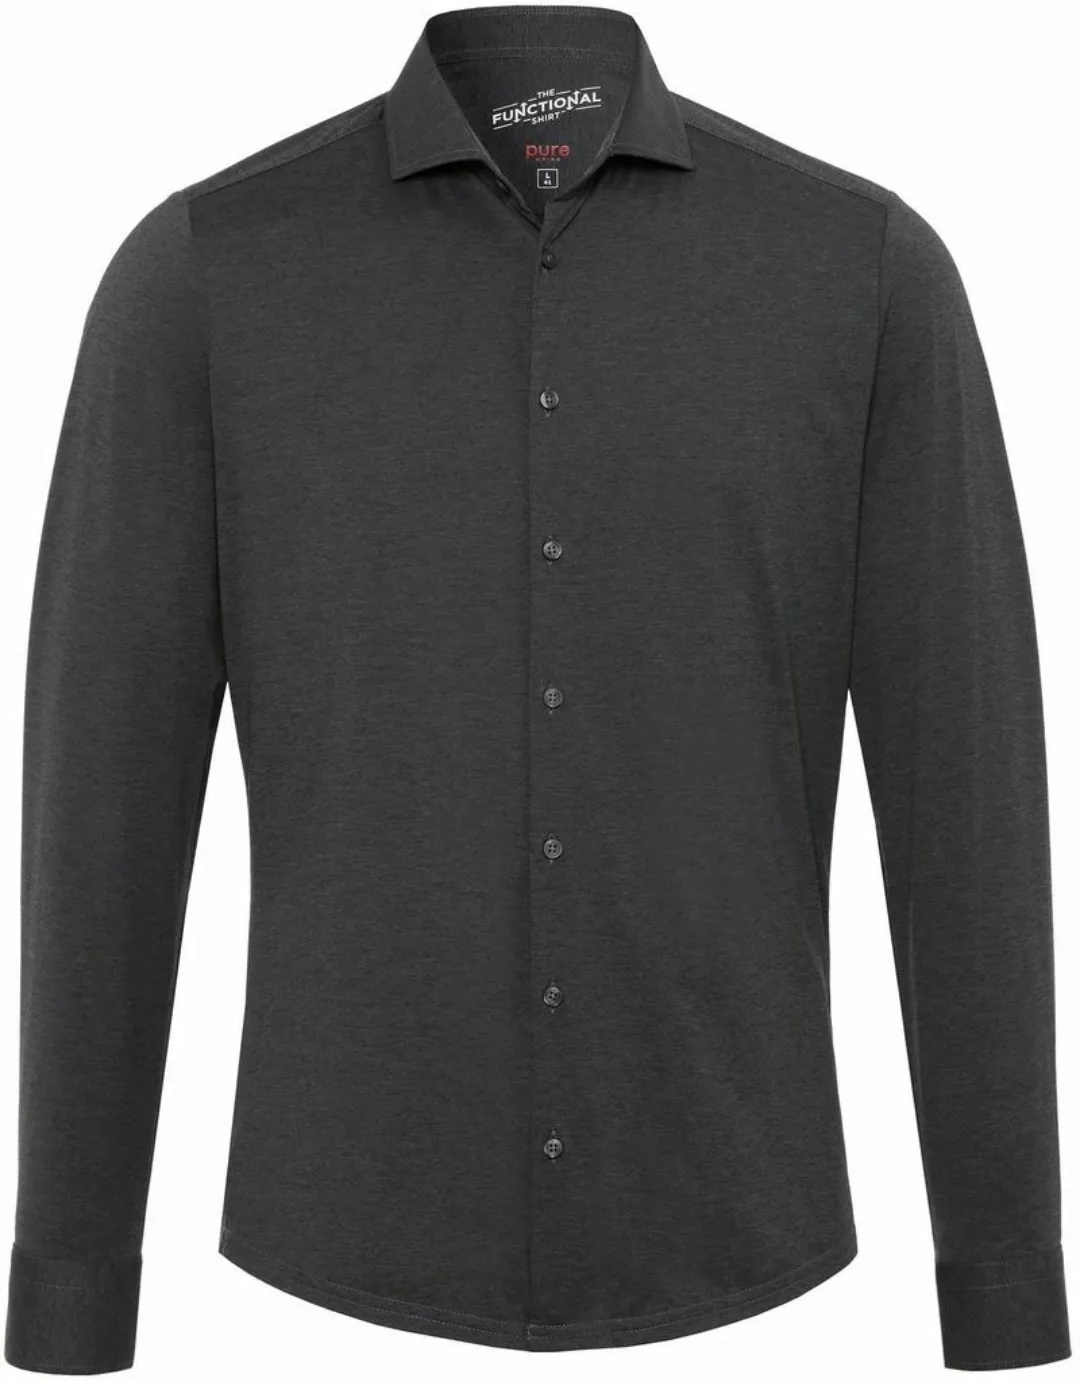 Pure H.Tico The Functional Dunkel Grau Shirt - Größe 42 günstig online kaufen